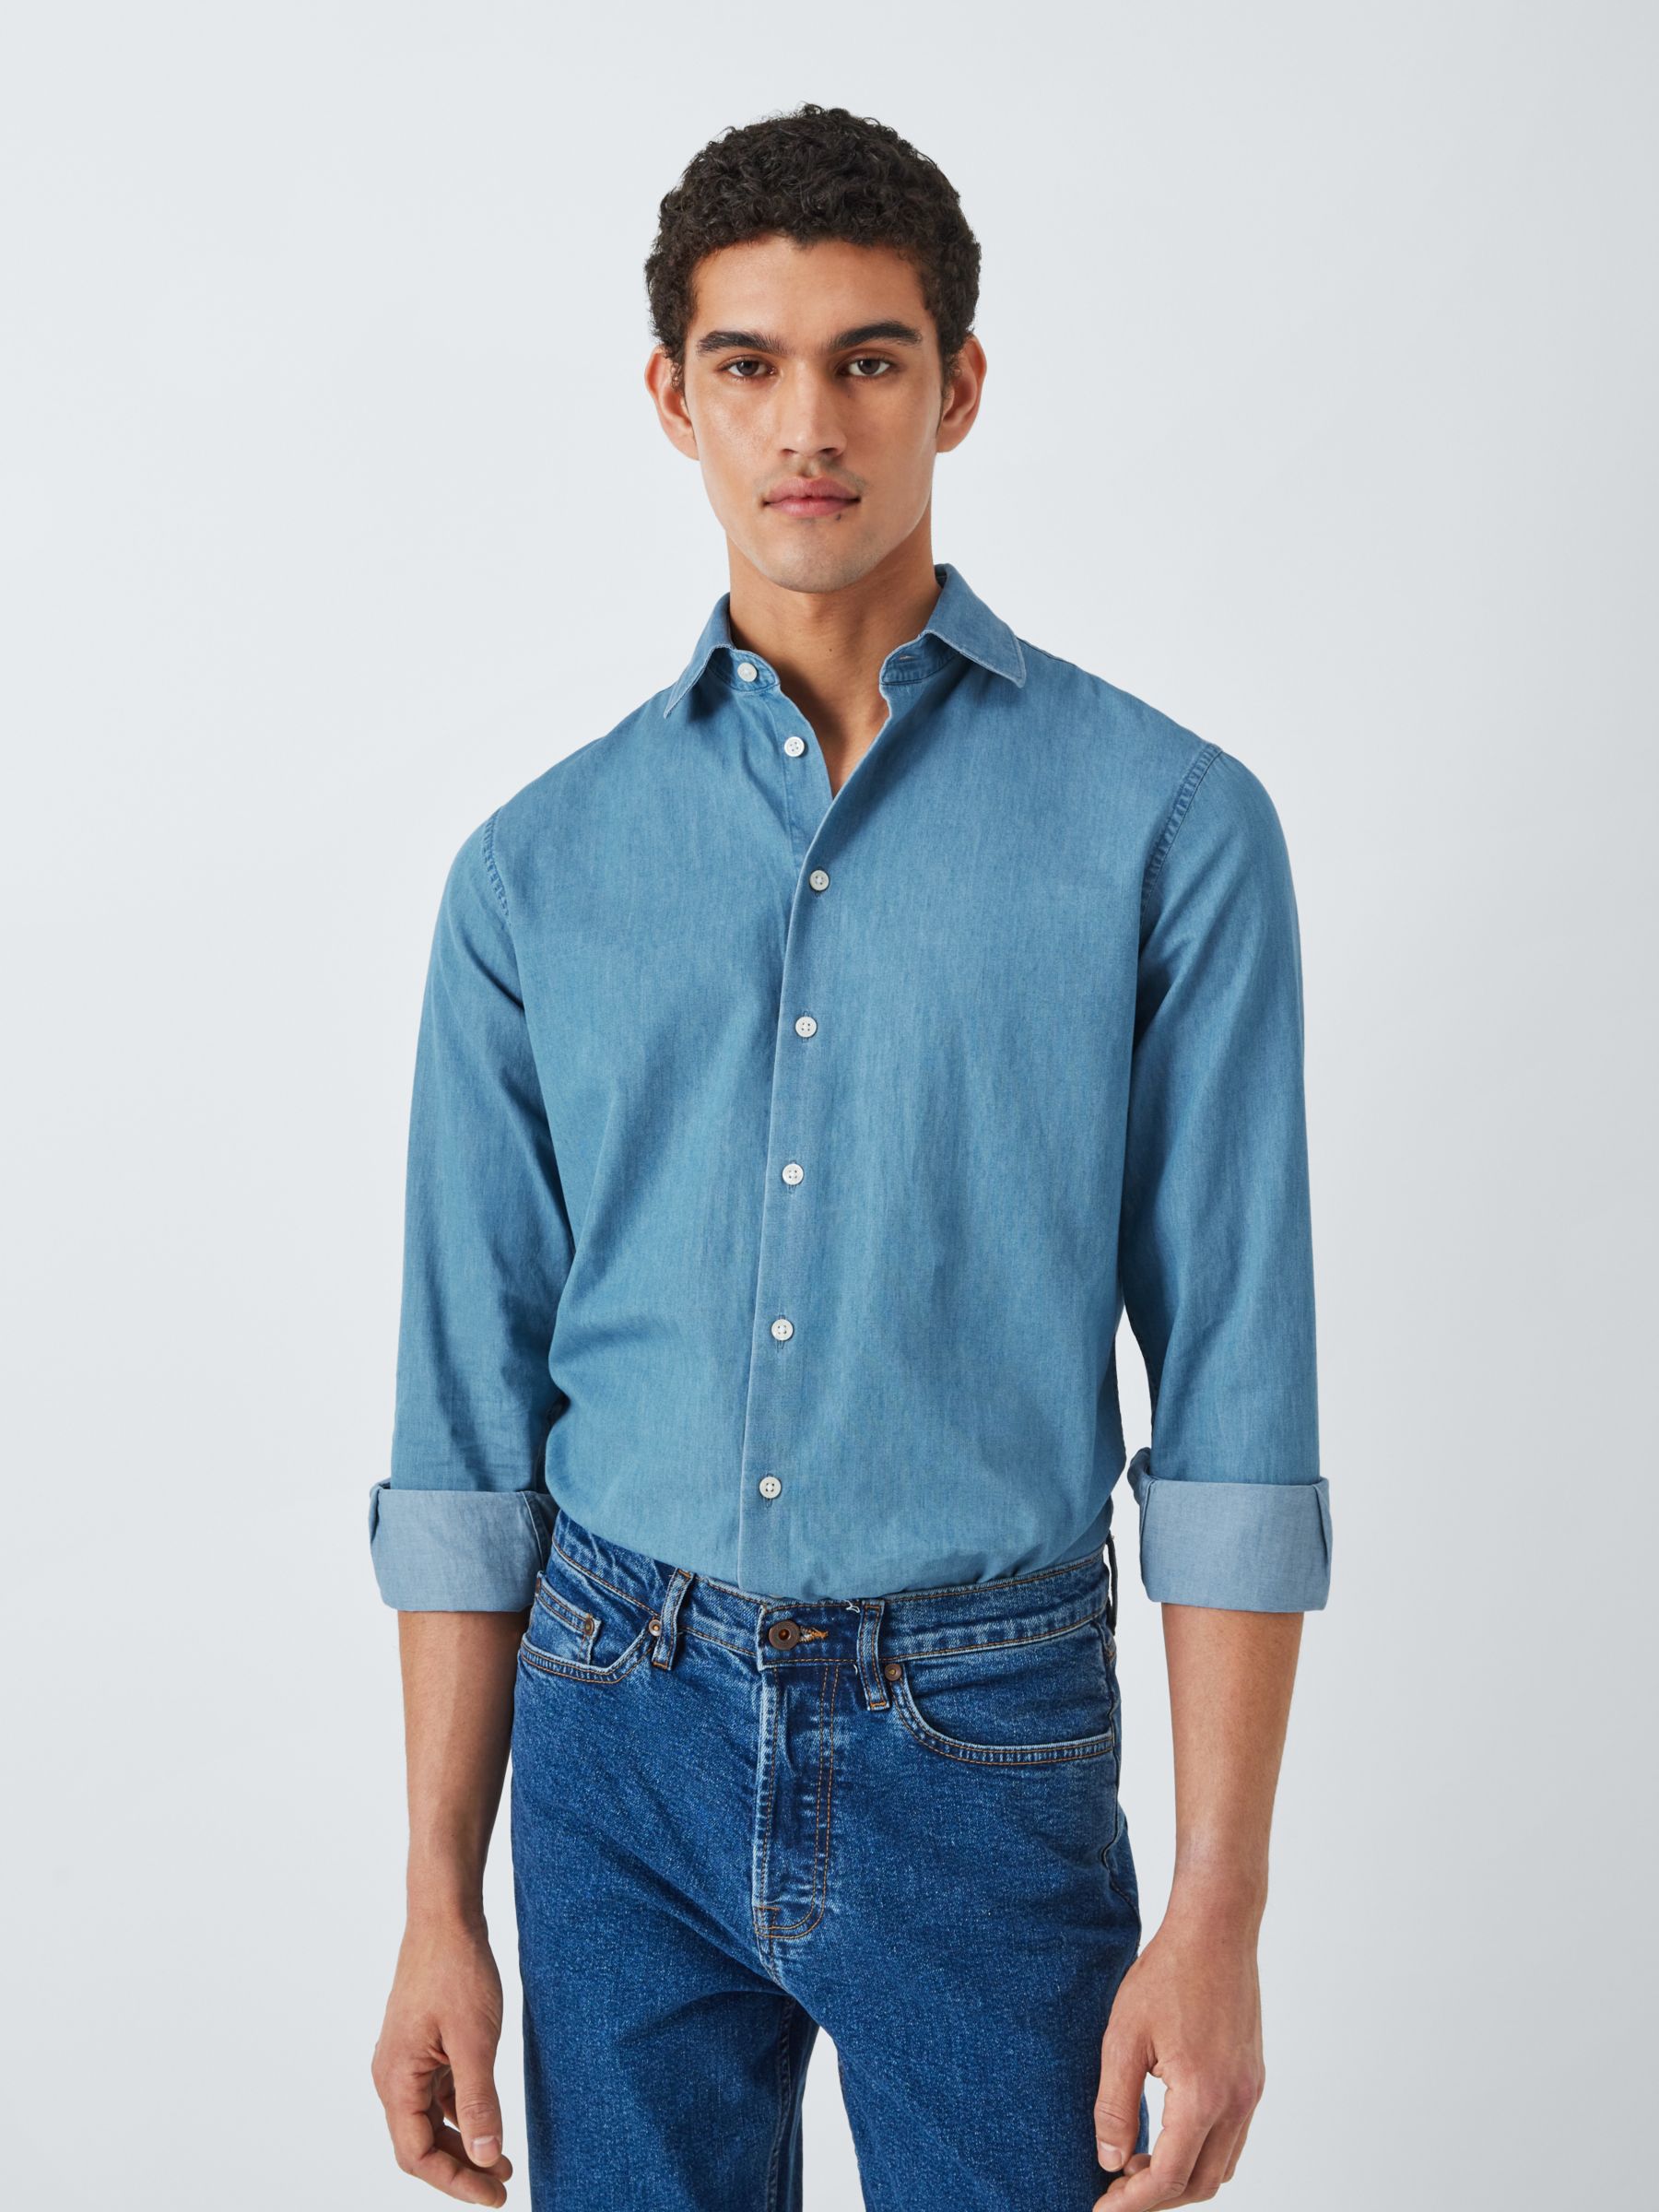 John Lewis Denim Tailored Fit Shirt, Blue at John Lewis & Partners